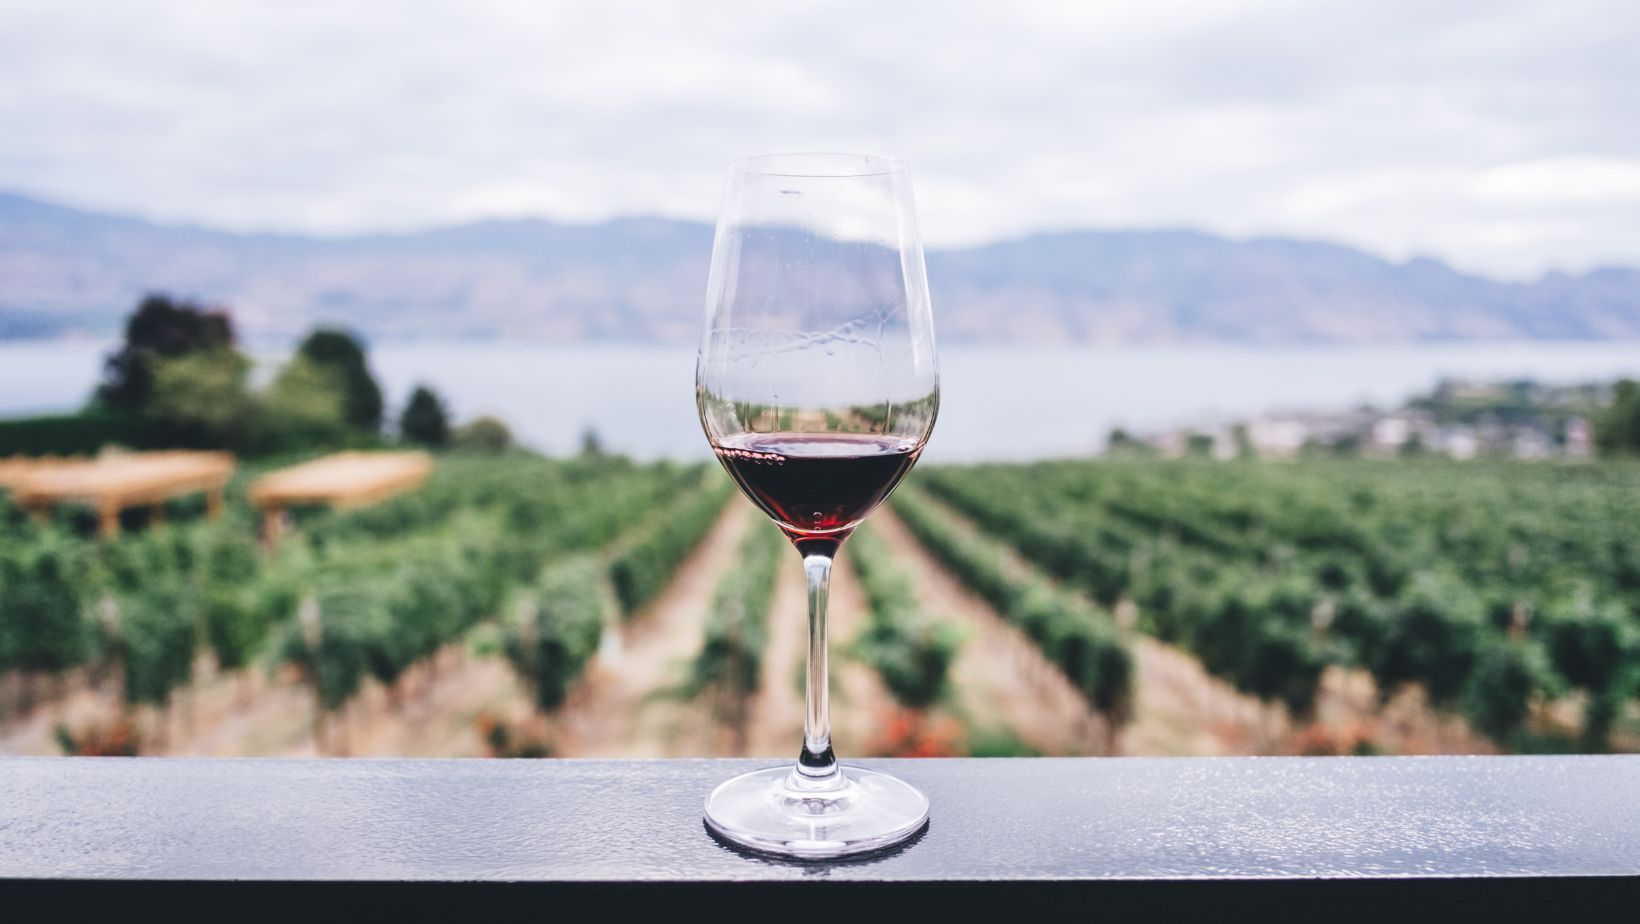 vindulge wine food travel lifestyle blog